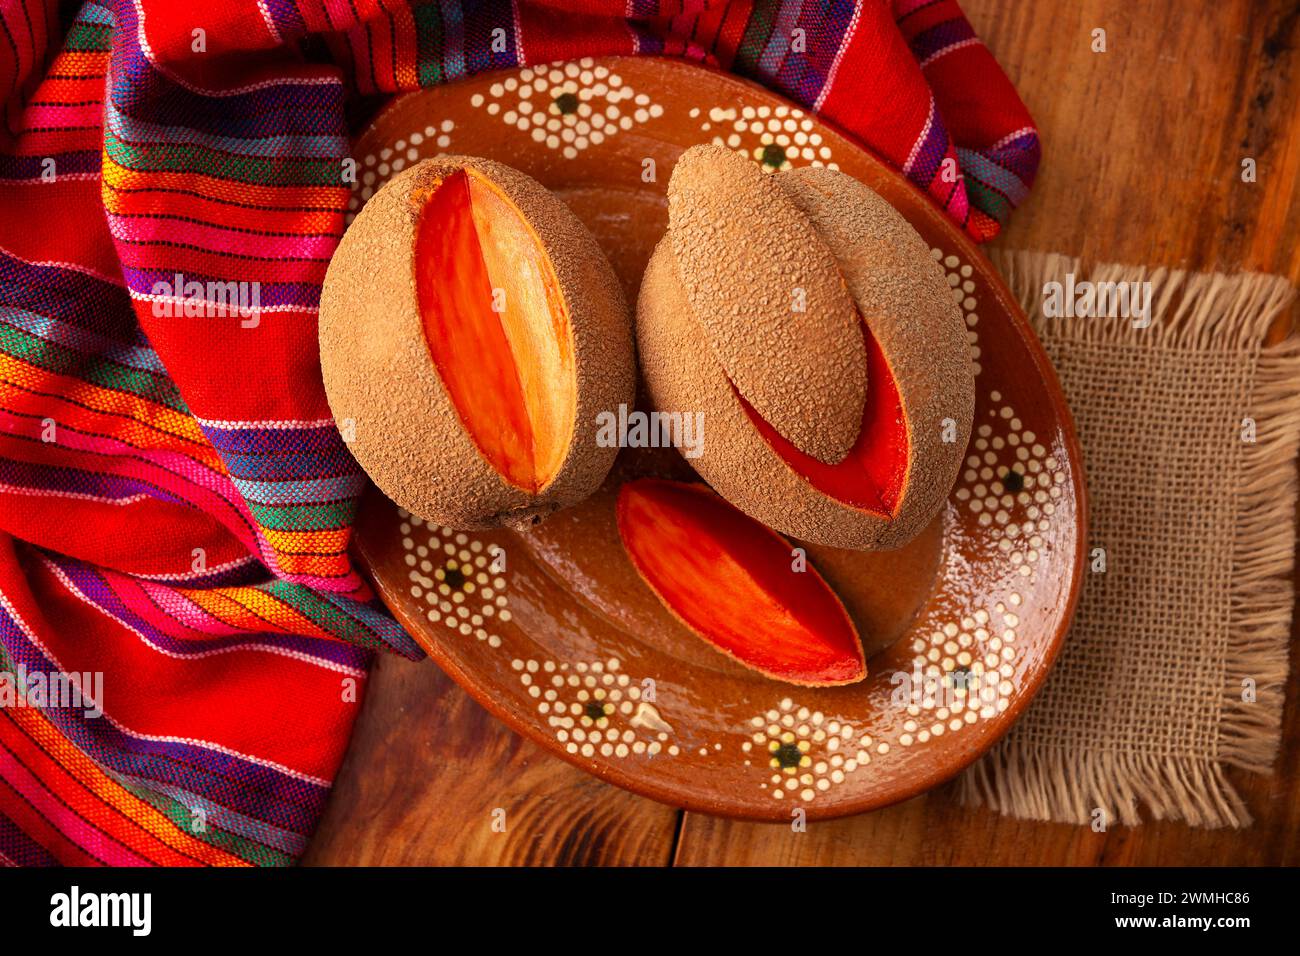 Mamey, (Pouteria sapota) frutto originario del Messico e di altri paesi americani, in alcuni paesi è conosciuto come Zapote, Sapote o Mamey rosso. Foto Stock